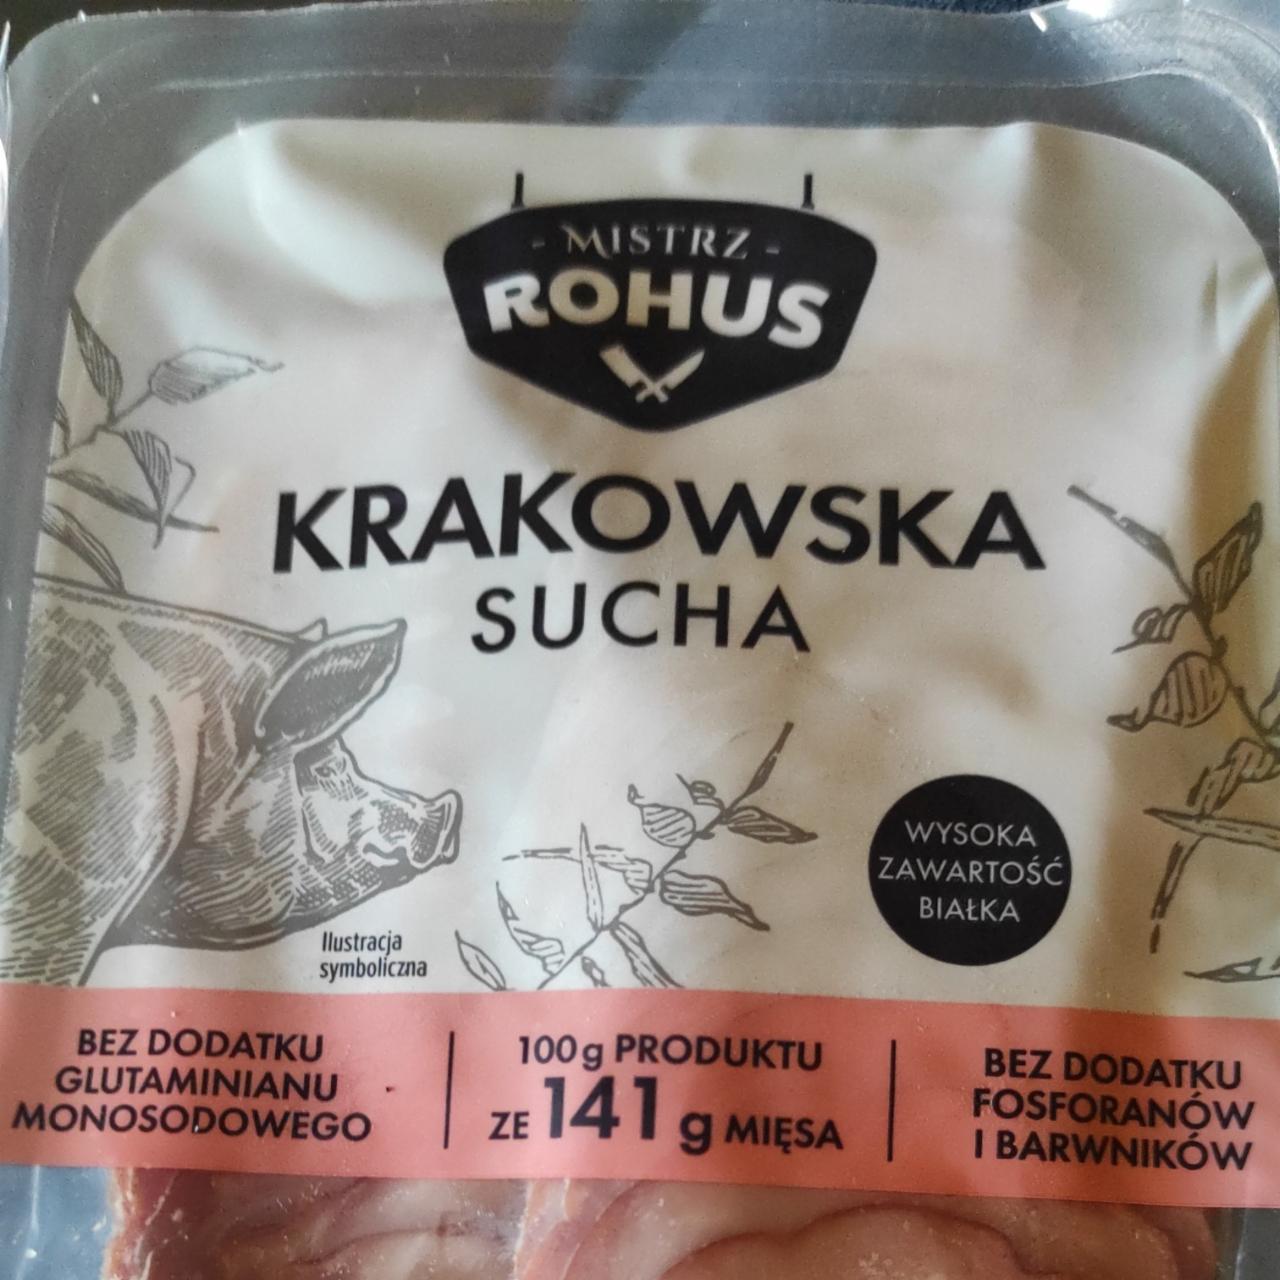 Fotografie - Krakowska sucha Mistrz Rohus